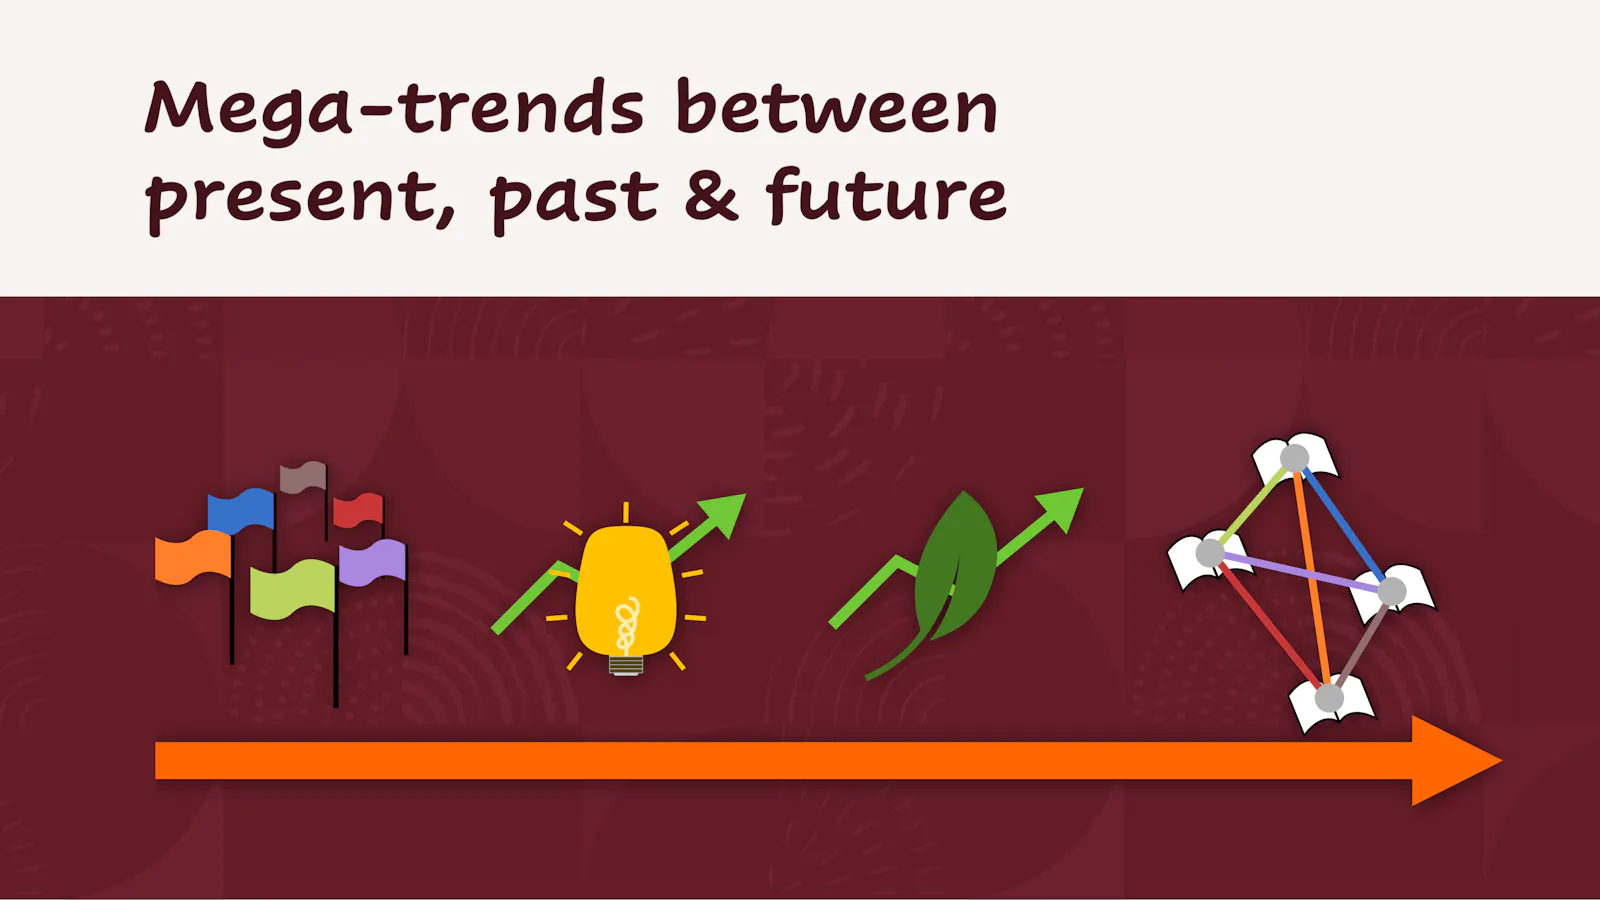 Mega-trends between present, past & future